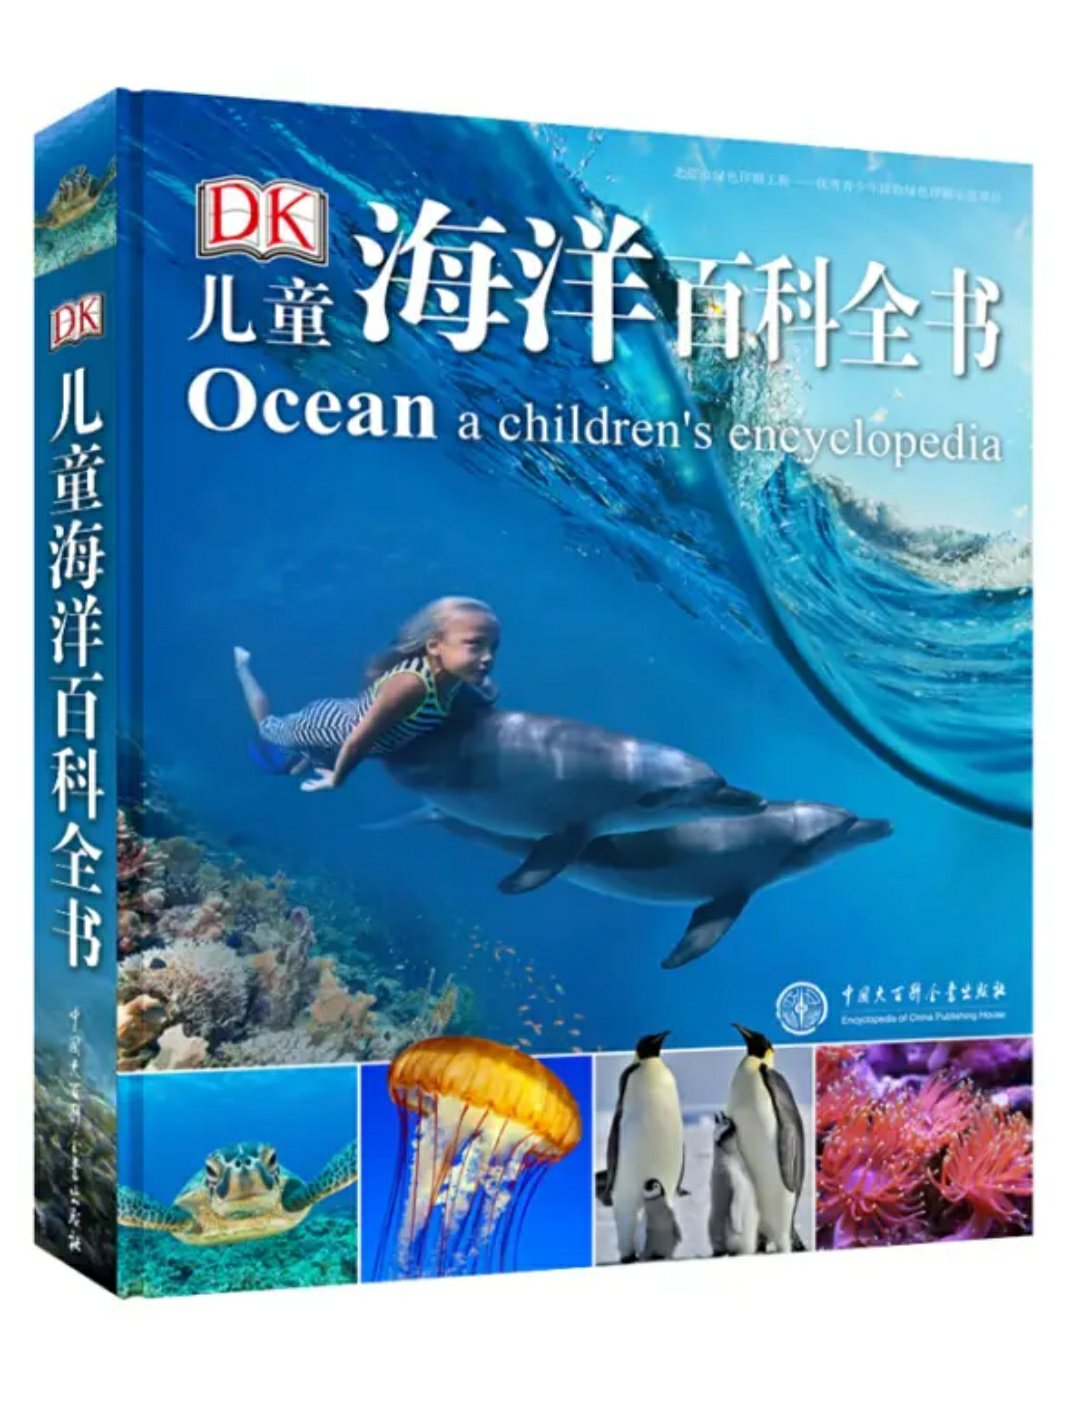 四岁孩子喜欢 DK 的书能看到很大 这本除了鲨鱼 其他兴趣不高  慢慢把所有的都买全 现在买全估计只会摧残书